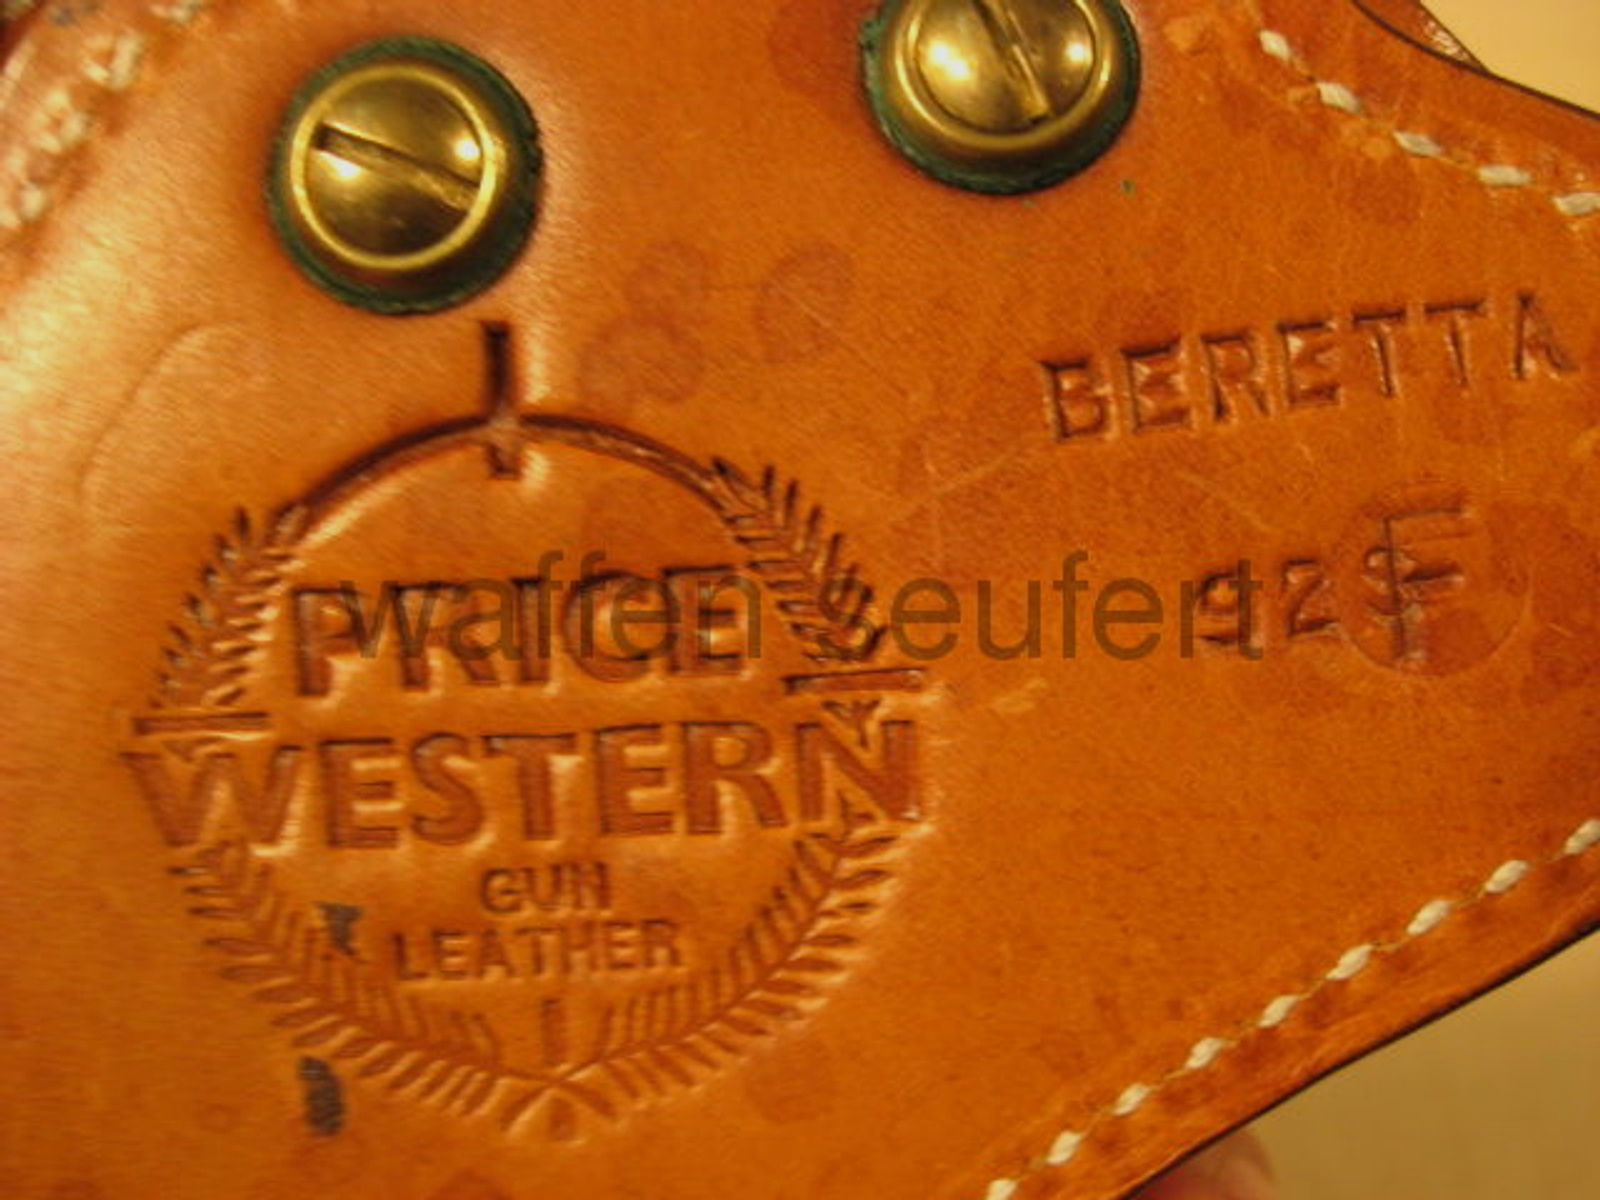 Price Western Gürtelholster für Beretta 92F